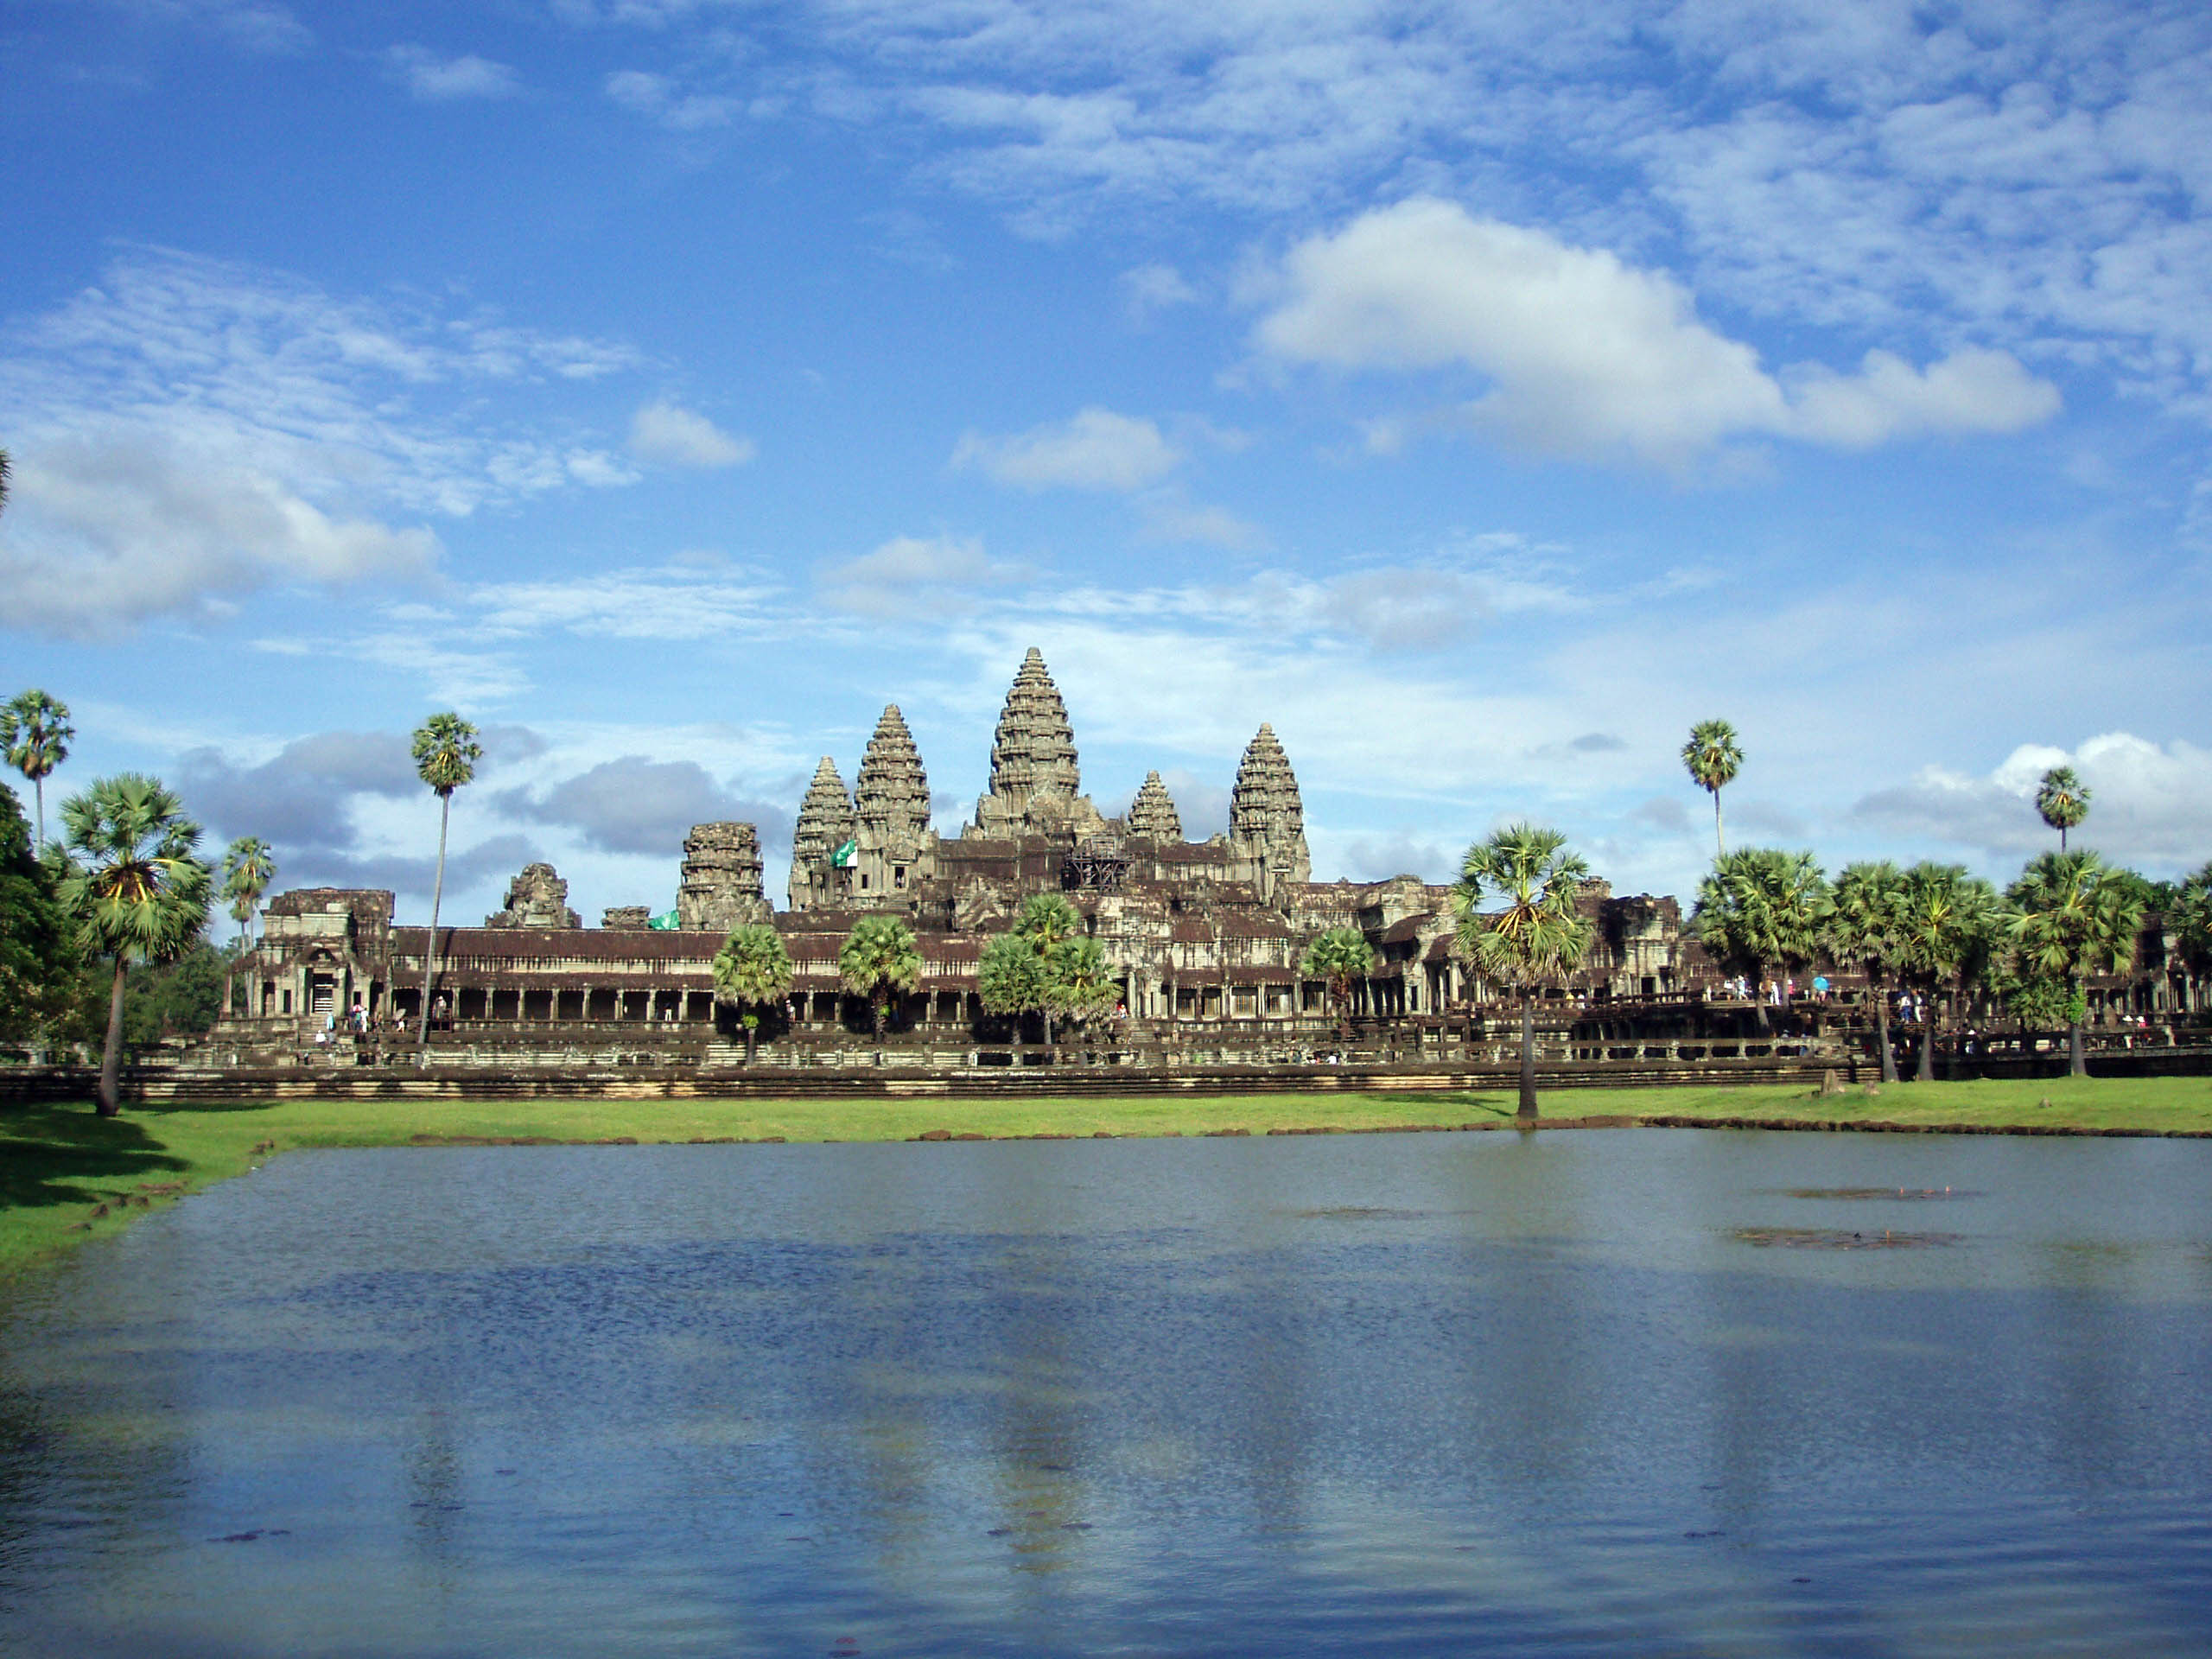 http://upload.wikimedia.org/wikipedia/commons/1/1a/Templo_de_Angkor_Wat_en_Camboya.JPG